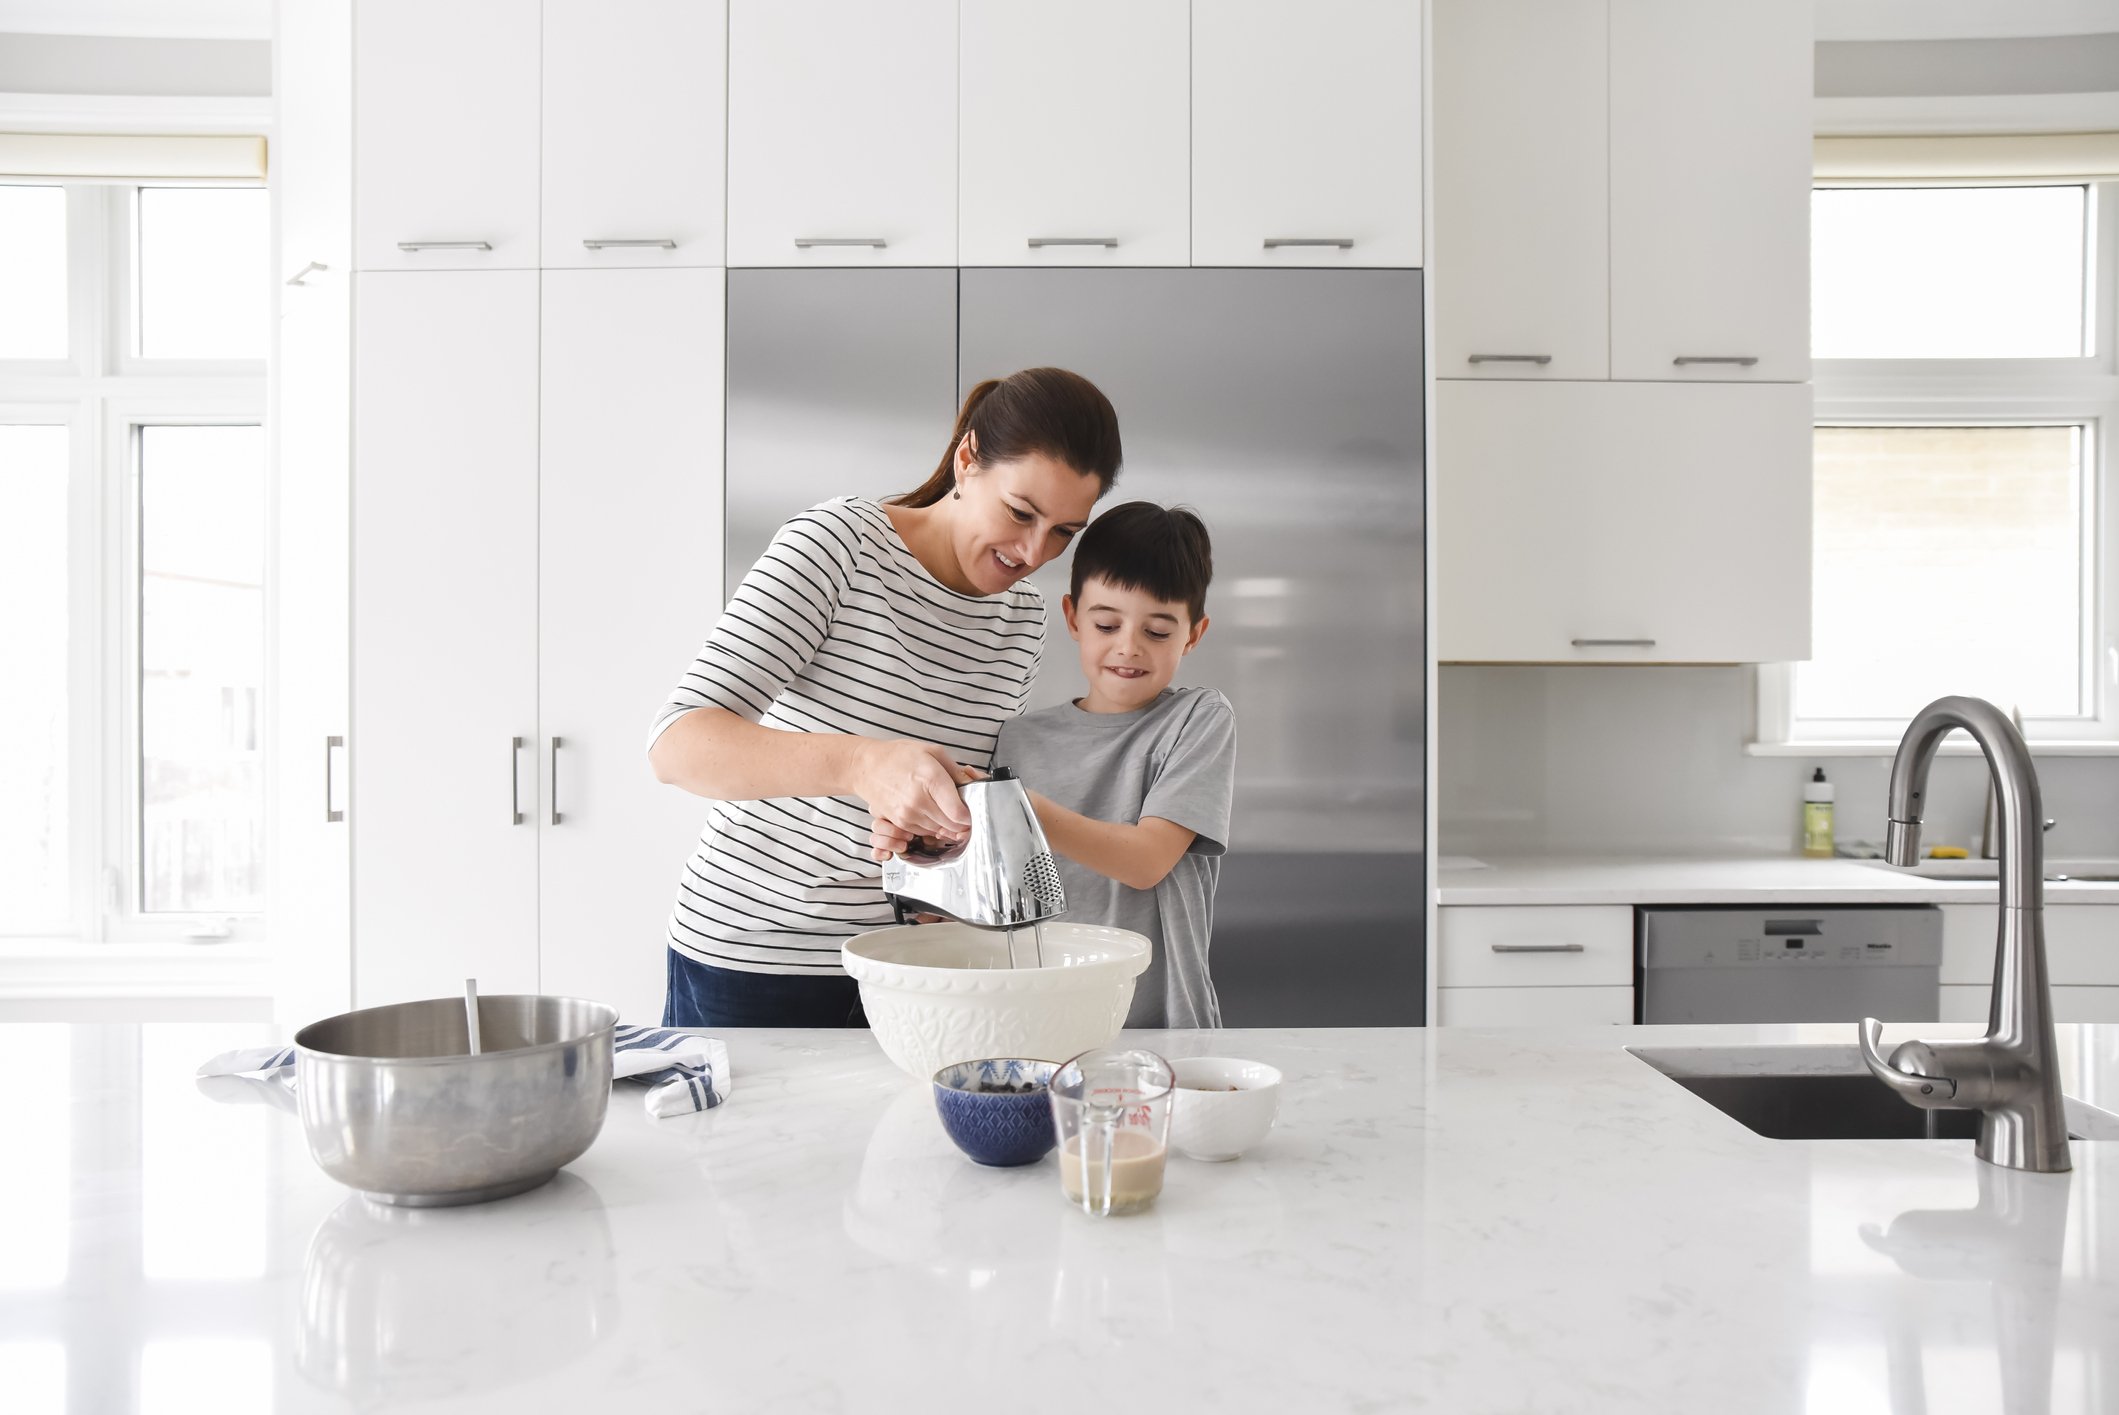 Mutter hilft dem kleinen Sohn beim Kochen in einer modernen Küche, einen Mixer zu benutzen | Quelle: Getty Images